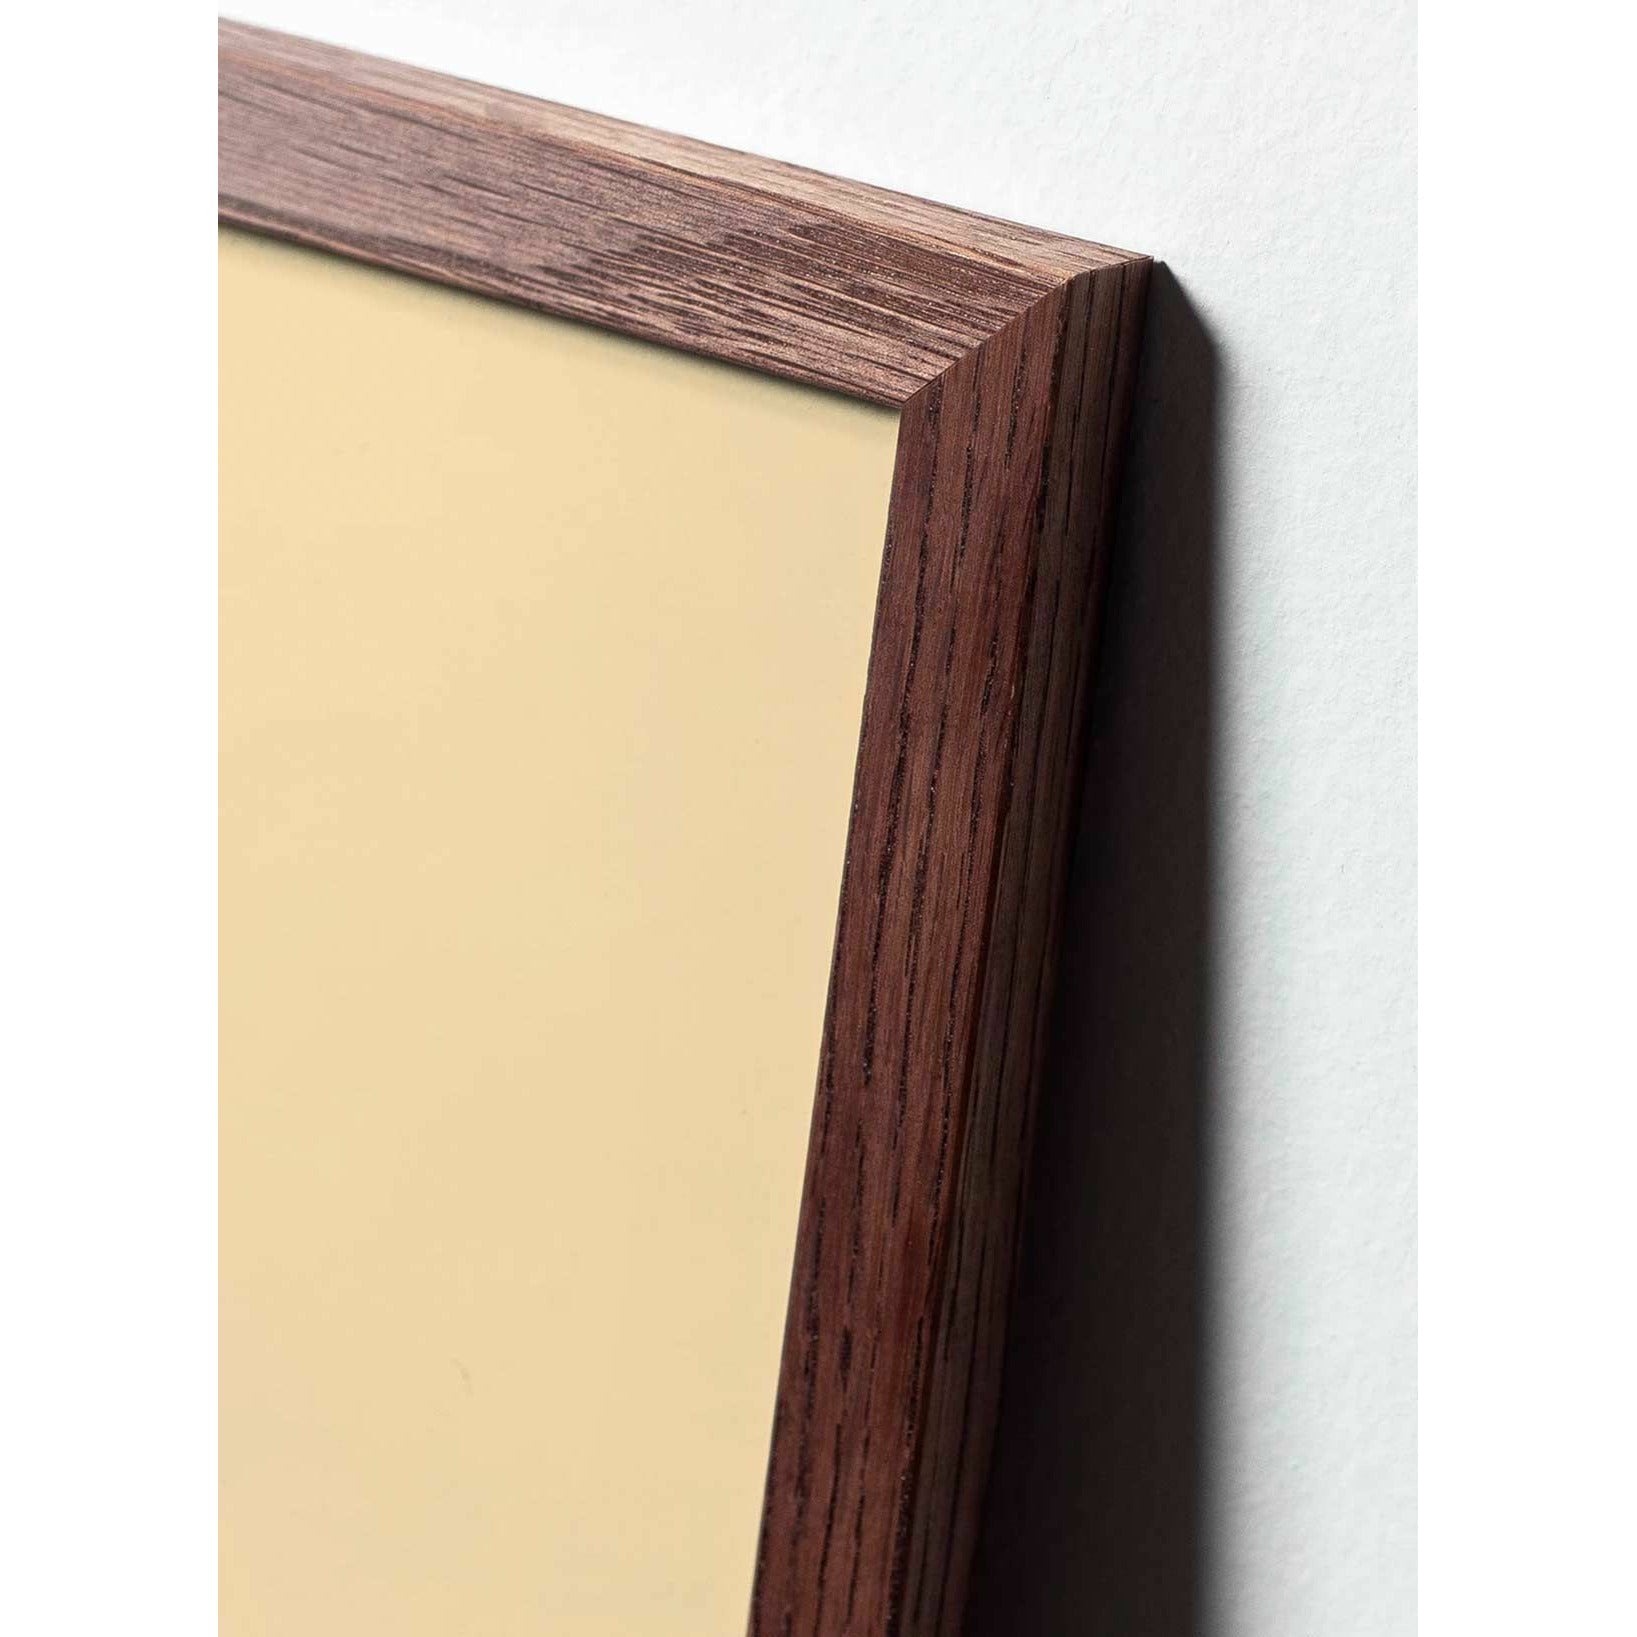 Póster de línea de huevo de precisión, marco de madera oscura 70x100 cm, fondo blanco